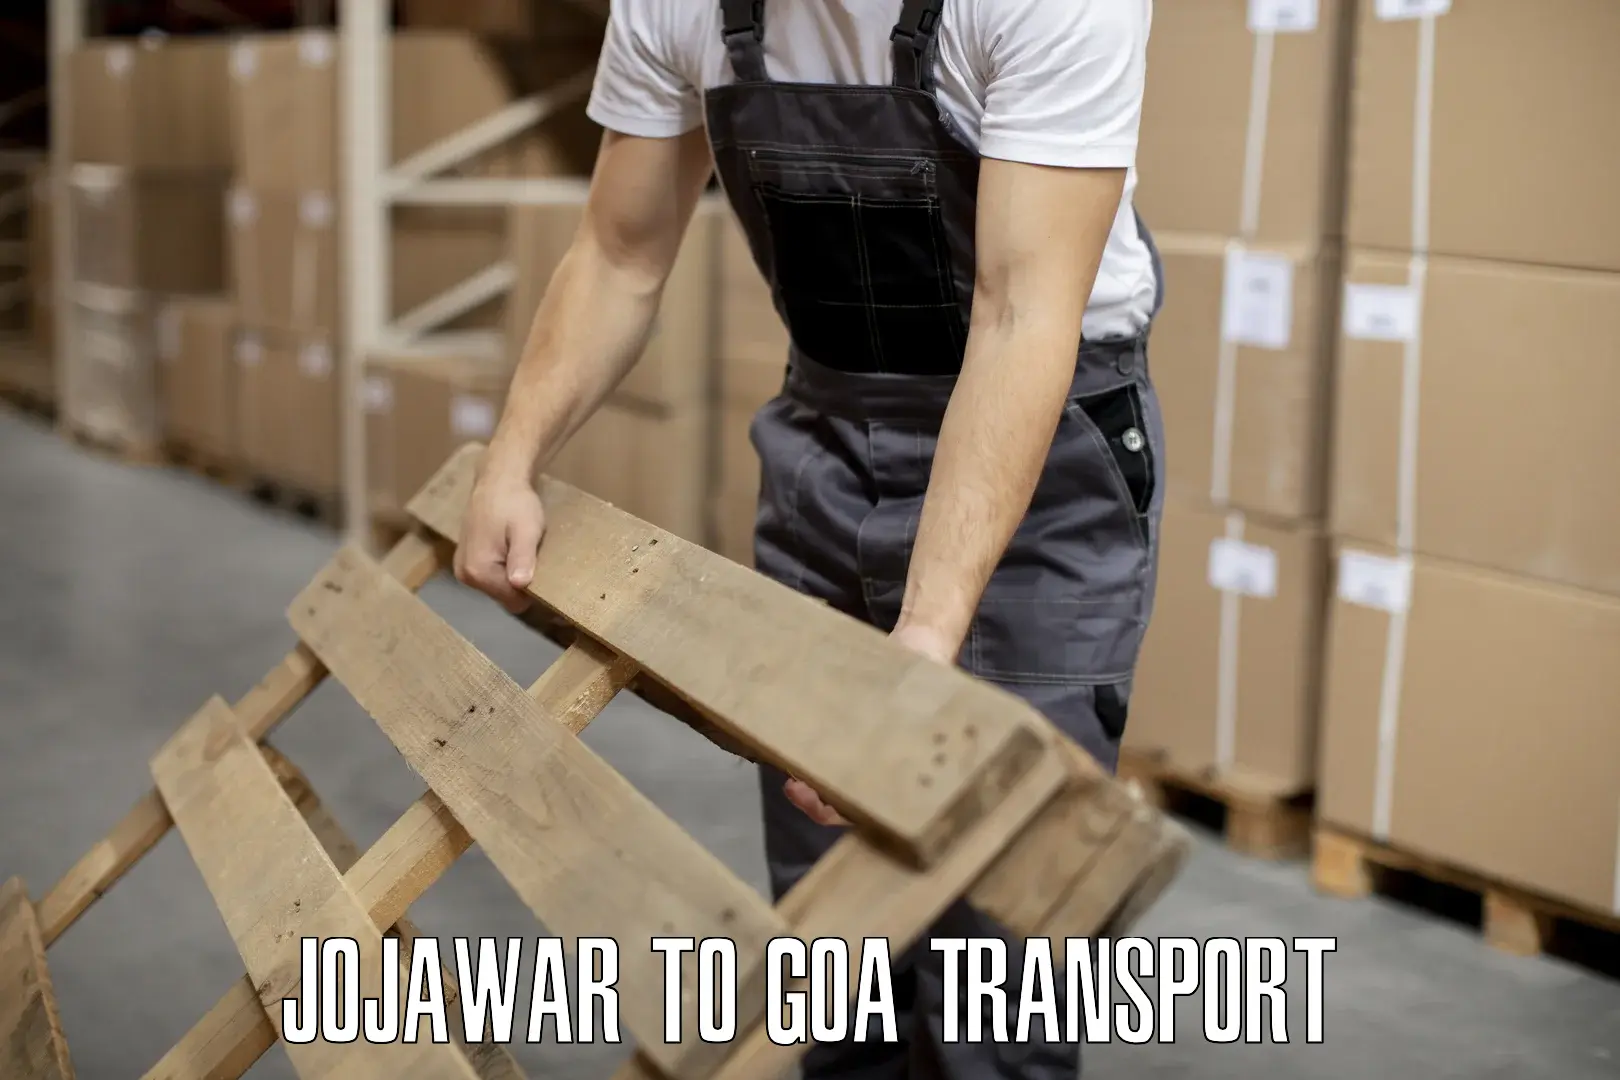 Land transport services Jojawar to Bicholim